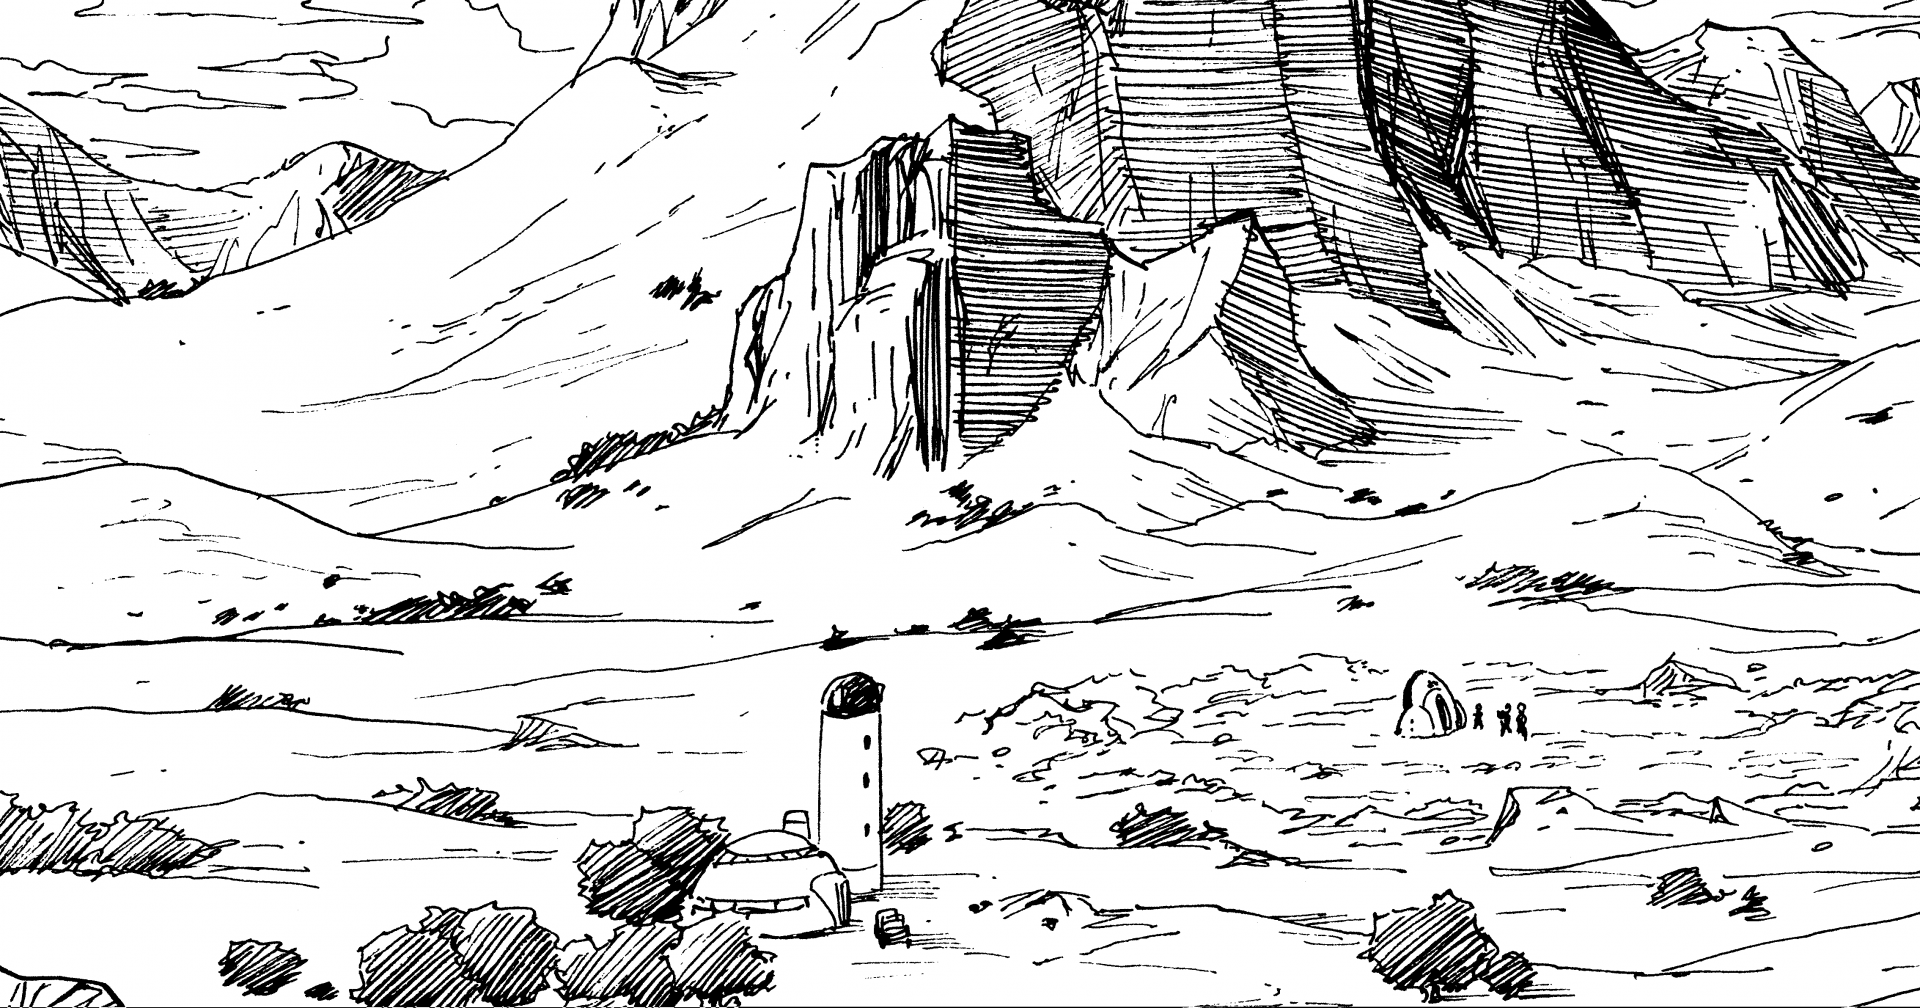 Investigación en profundidad sobre el manga de Dragon Ball: Archivo # 016  Diario de viaje mundial: La Spaceship oculta de Babidi] | SITIO OFICIAL DE  DRAGON BALL